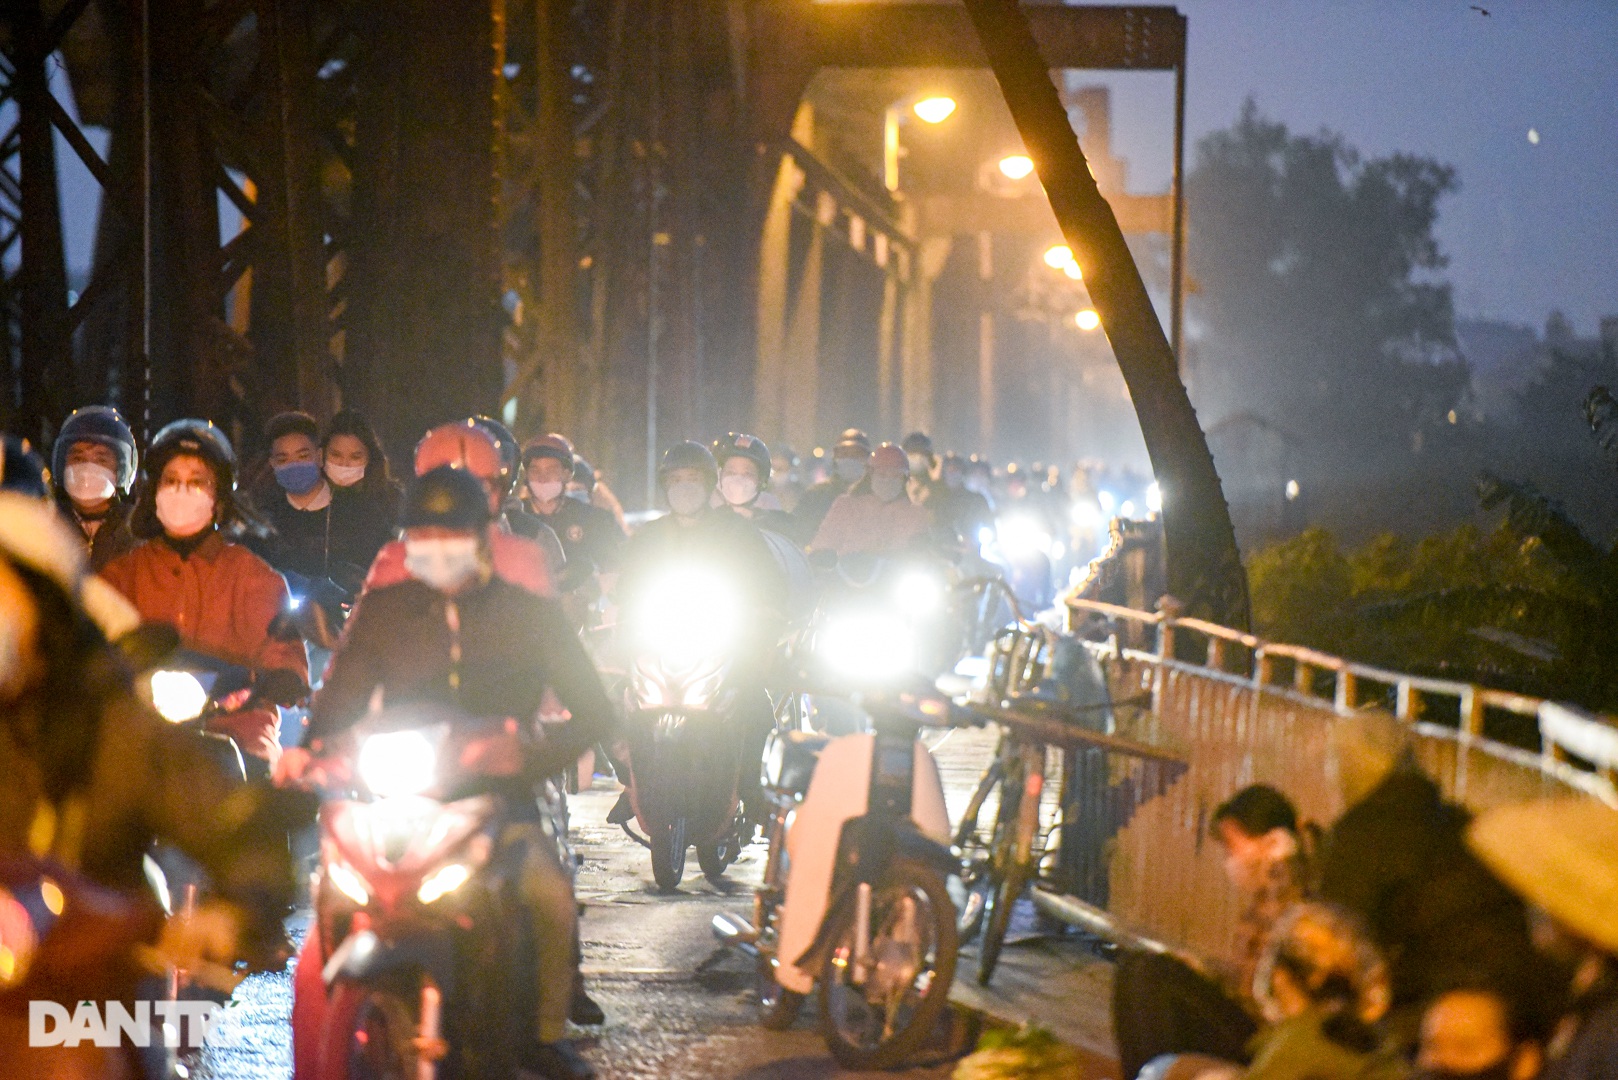 Cảnh họp chợ lộn xộn, giao thông ùn ứ trên cây cầu trăm tuổi ở Hà Nội - 11